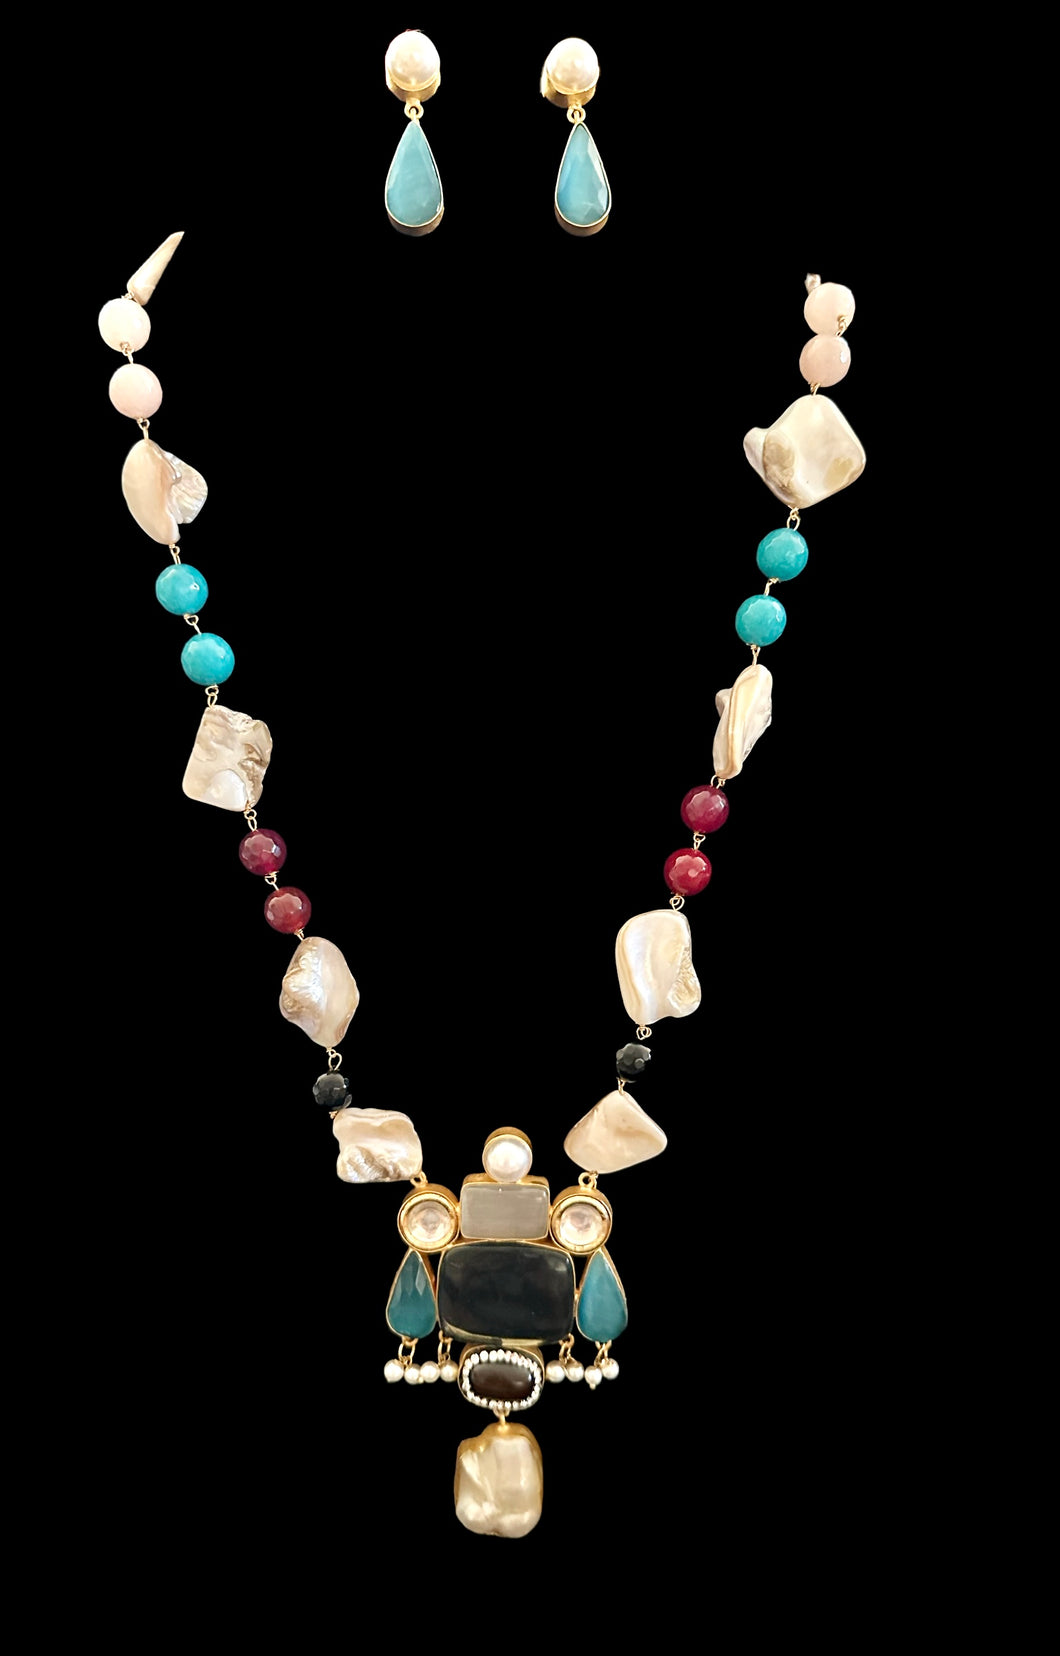 Blue agate necklace set